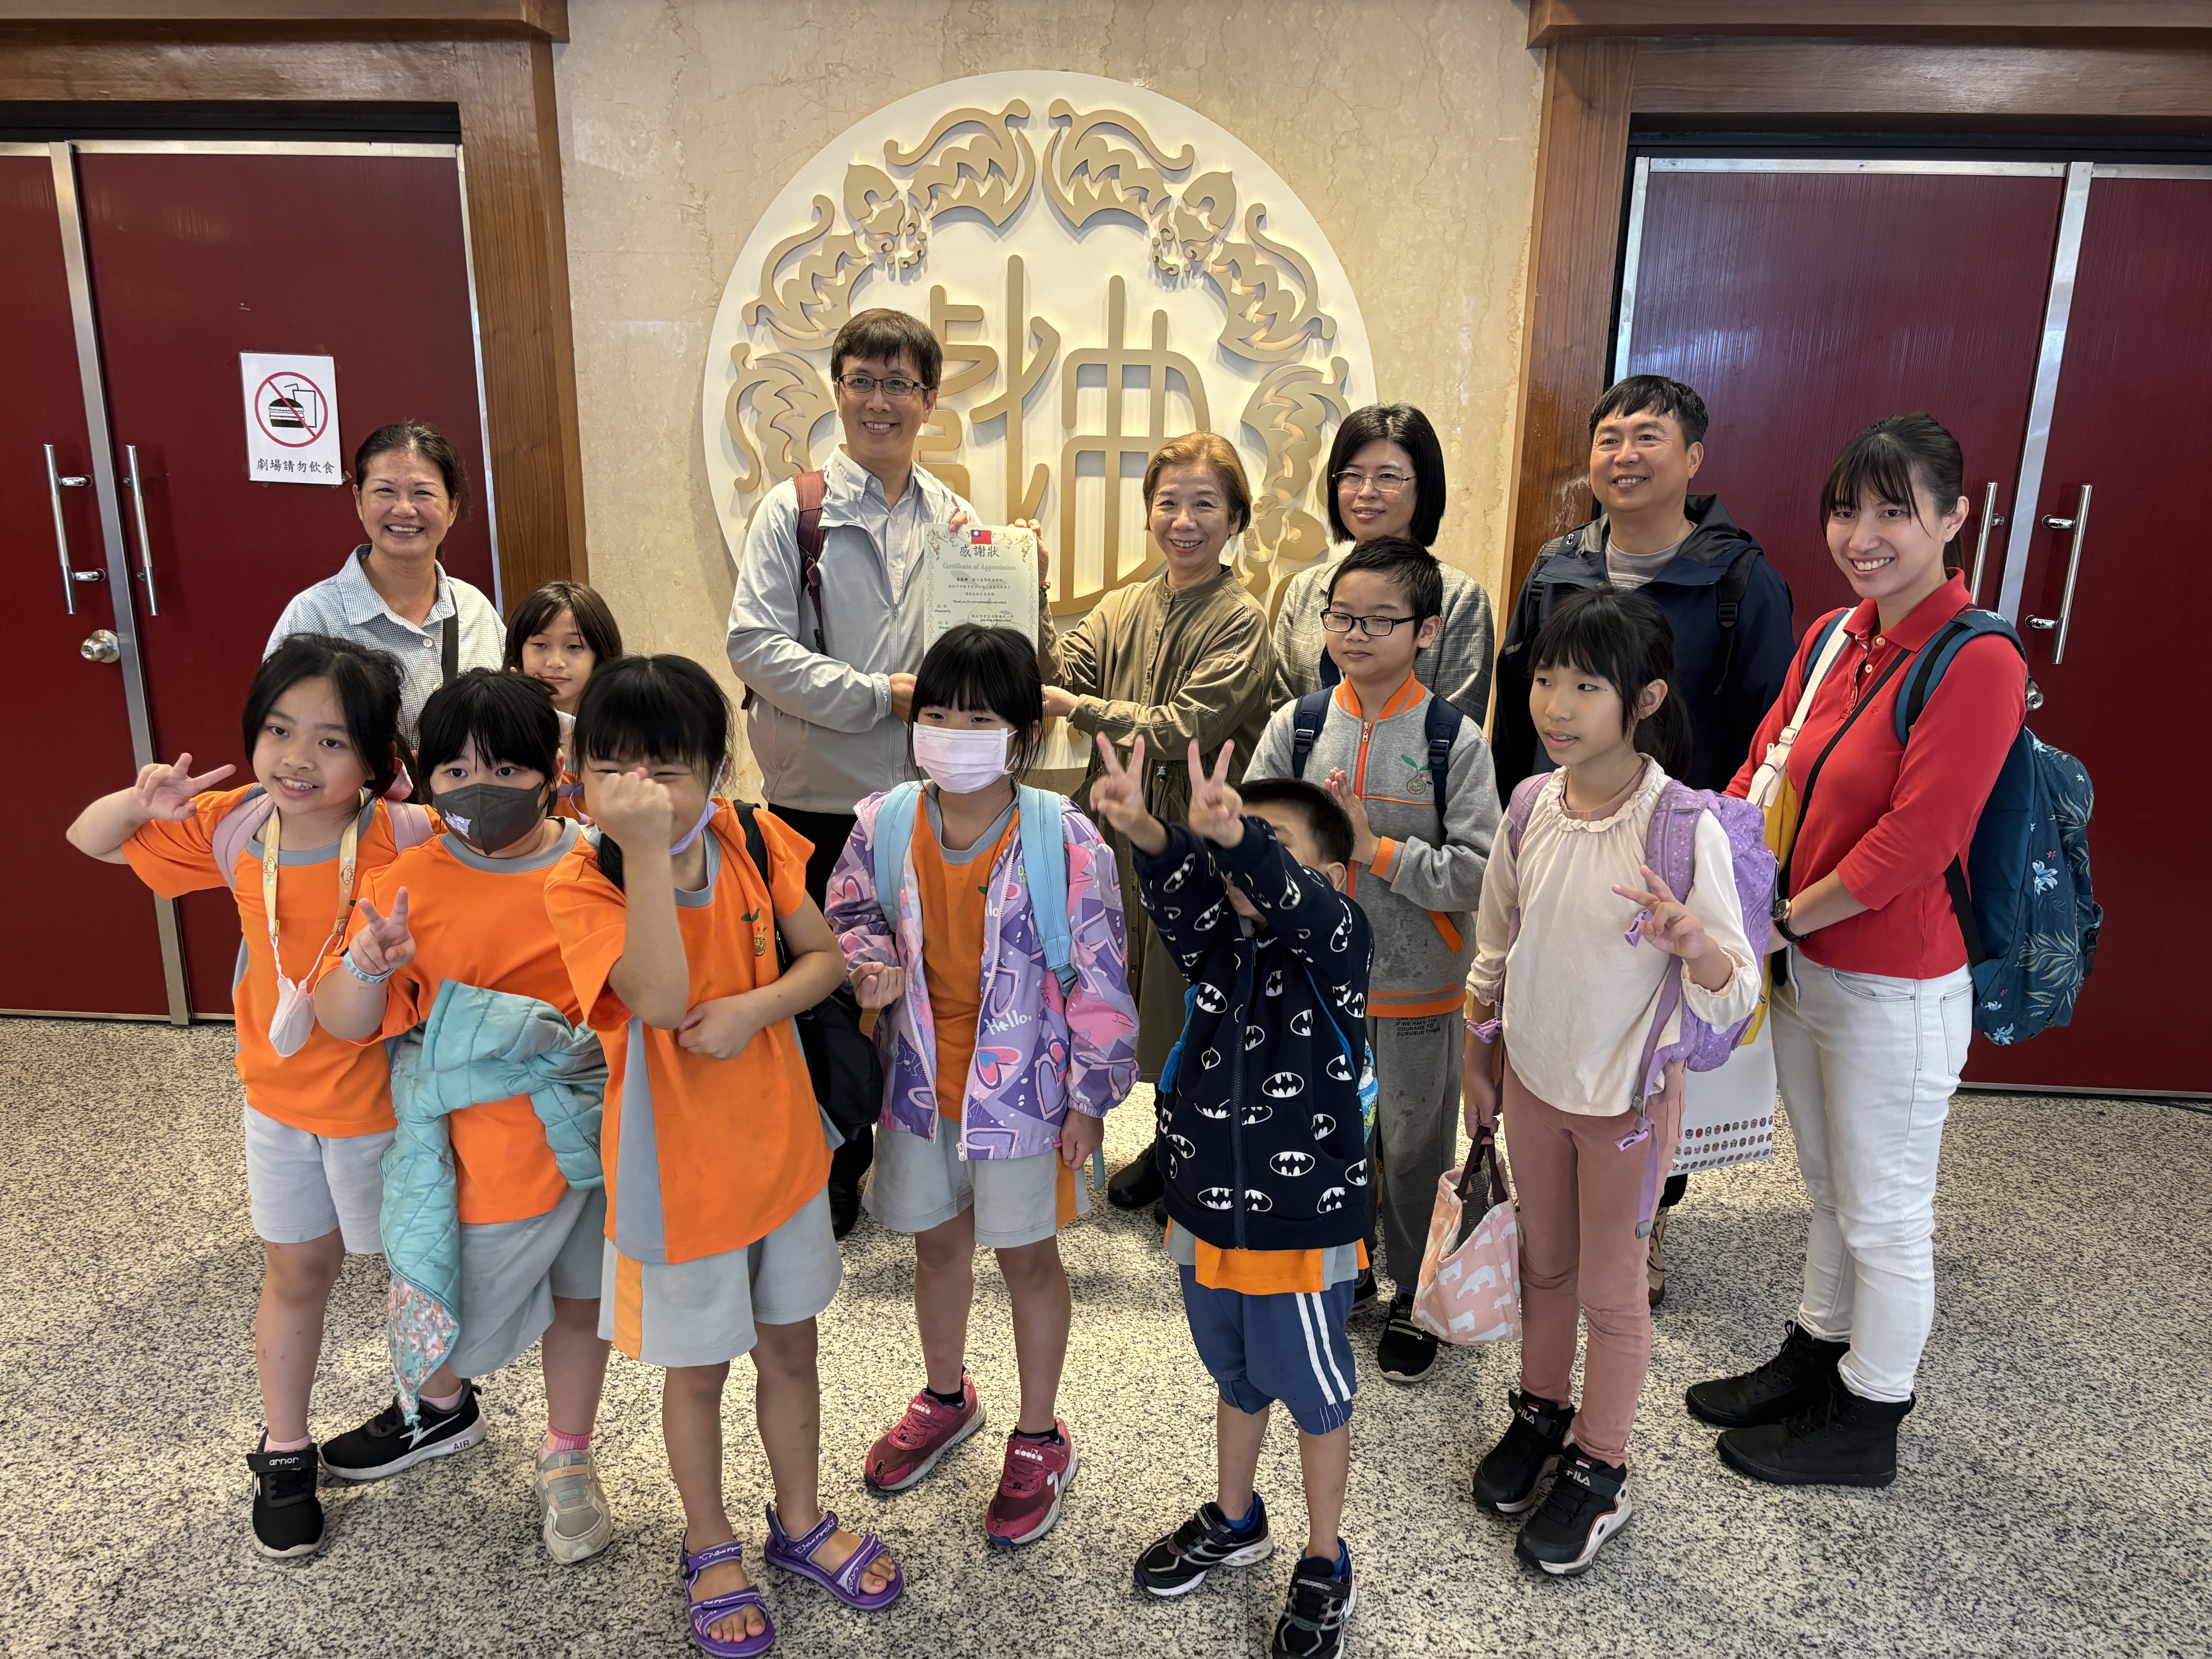 高峰國小傳統戲劇社戶外參訪國立臺灣戲曲學院活動照片